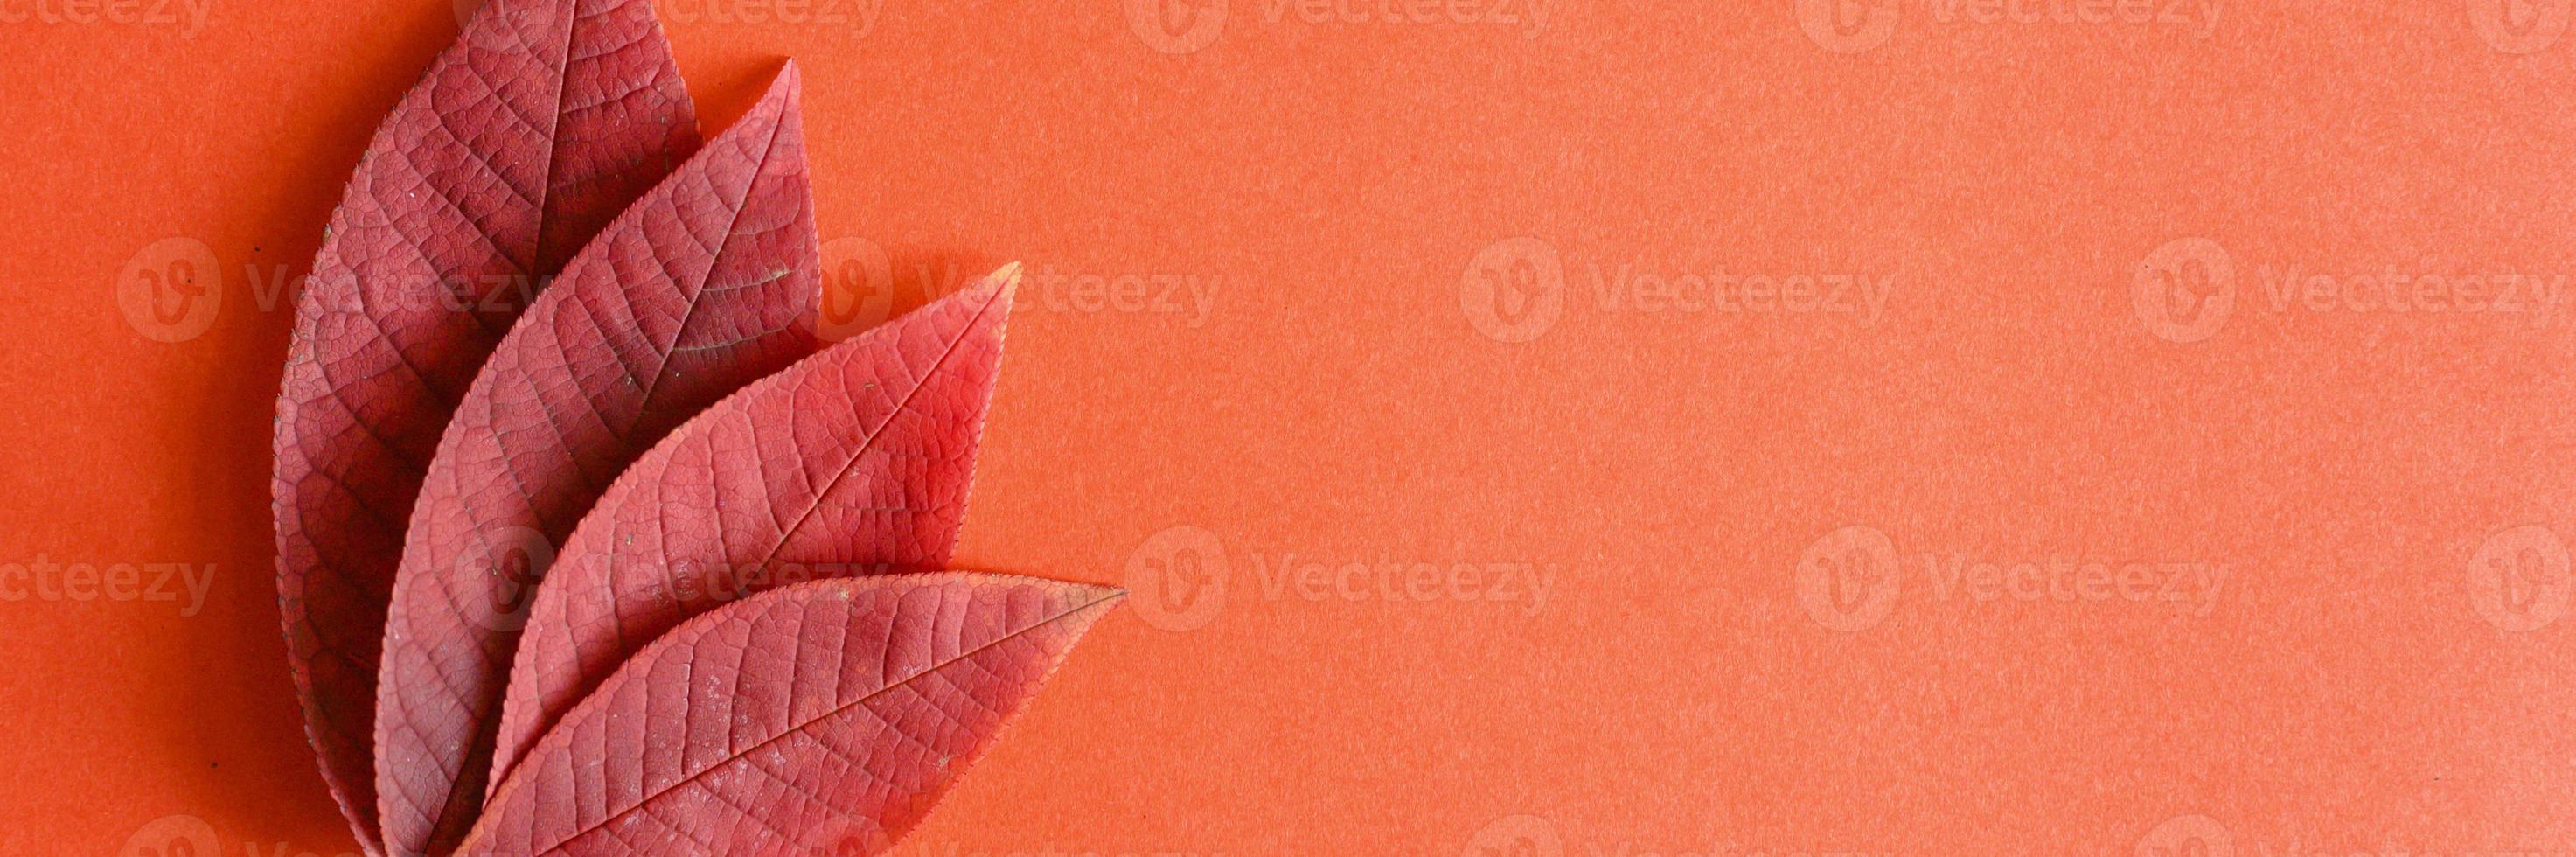 rote gefallene Herbstkirschblätter auf einem roten Papierhintergrund foto